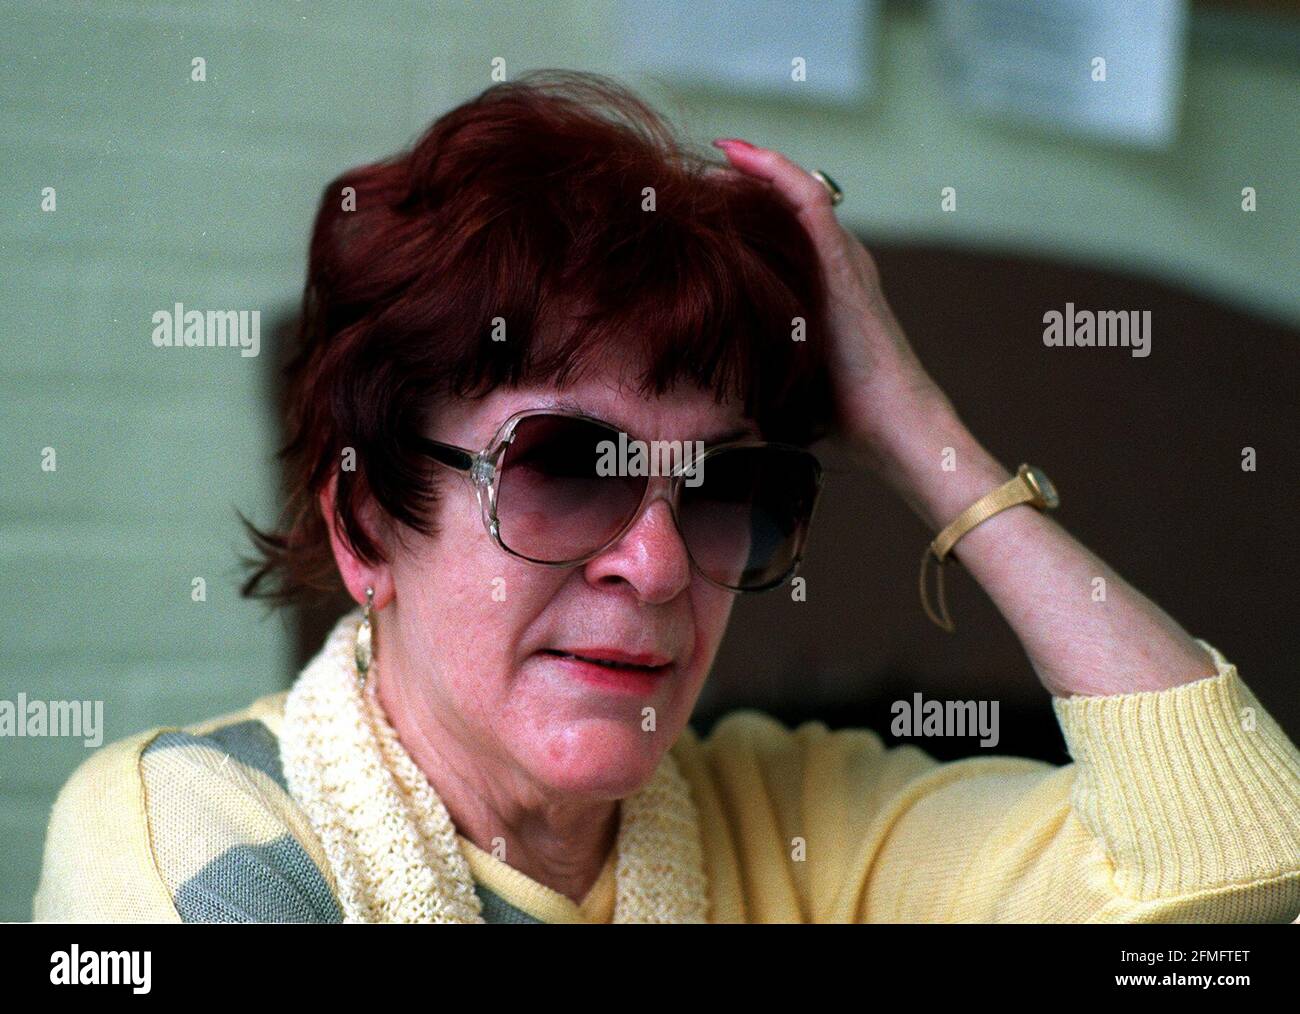 Valerie-Joanne Adam, die Drogen geschmuggelt Juni 1999Valerie-Joanne Adam, der war Zum Drogenschmuggel ausgetrickst Stockfoto